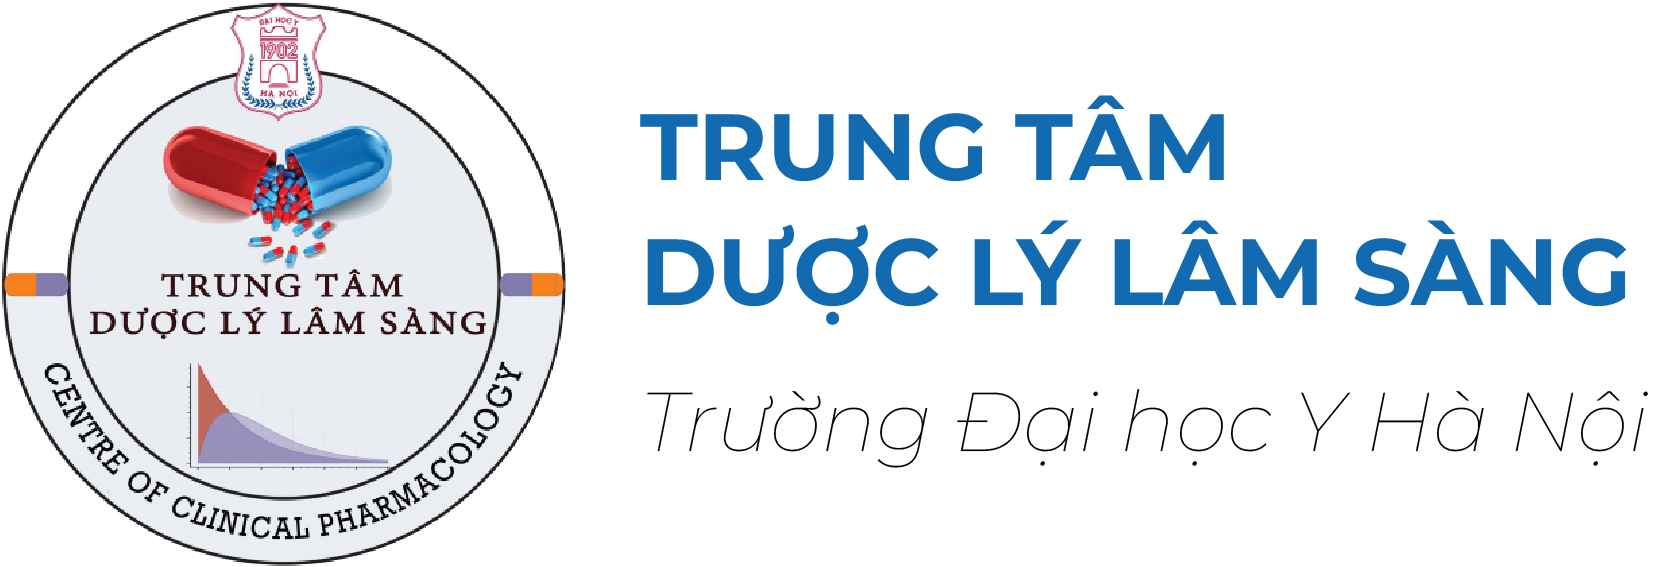 logo TRUNG TÂM DƯỢC LÝ LÂM SÀNG